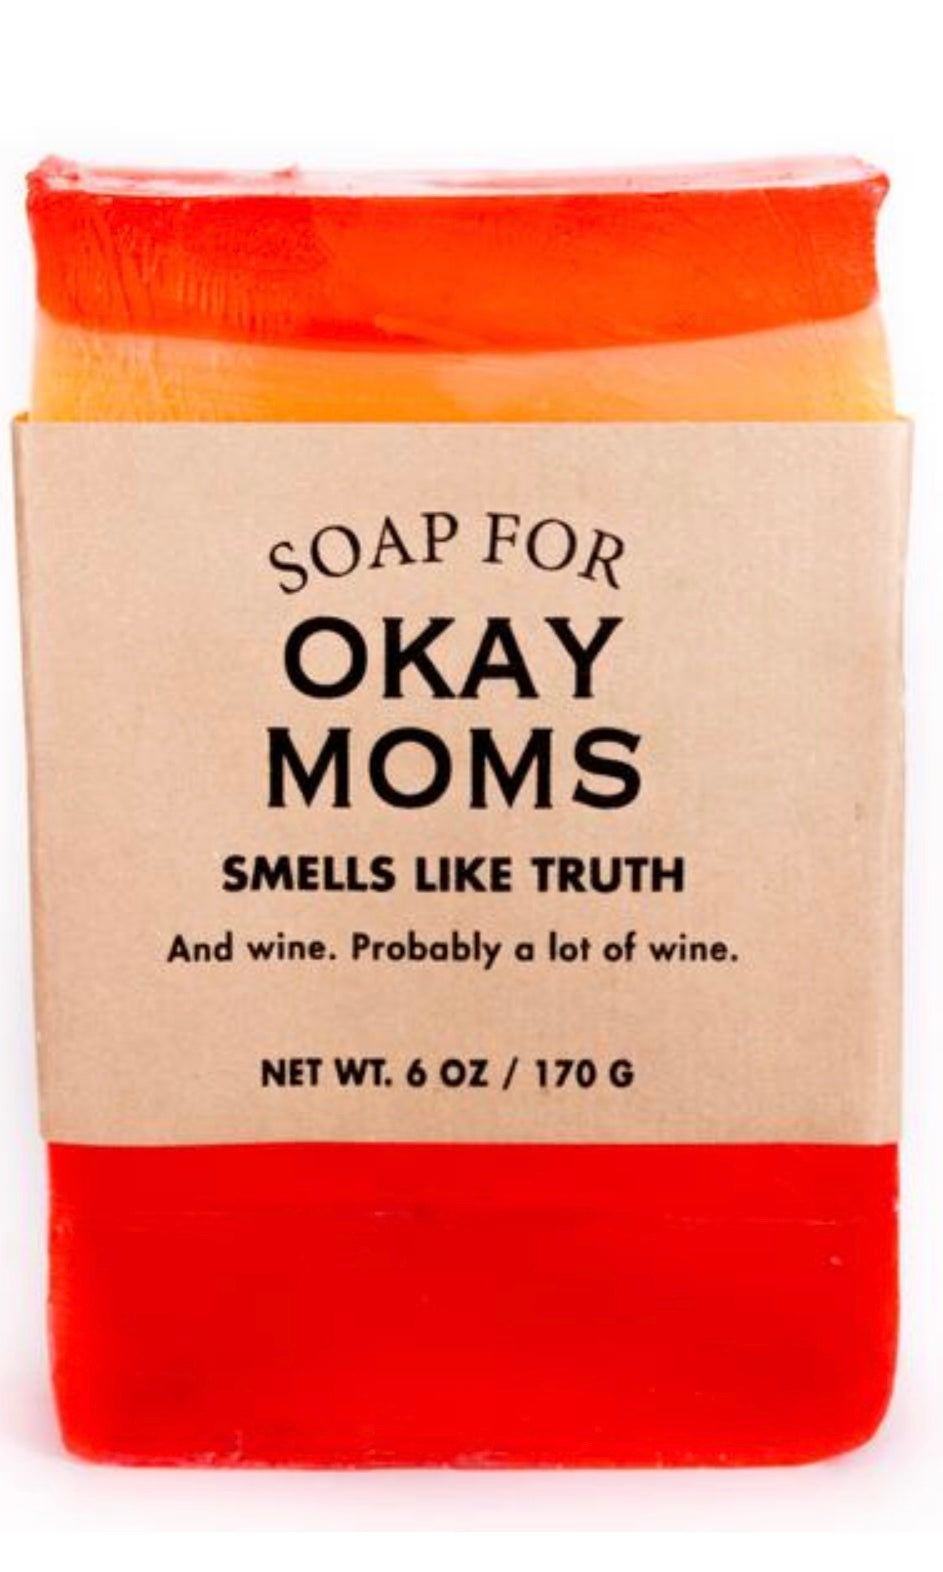 Whisky River Soap for Okay Moms